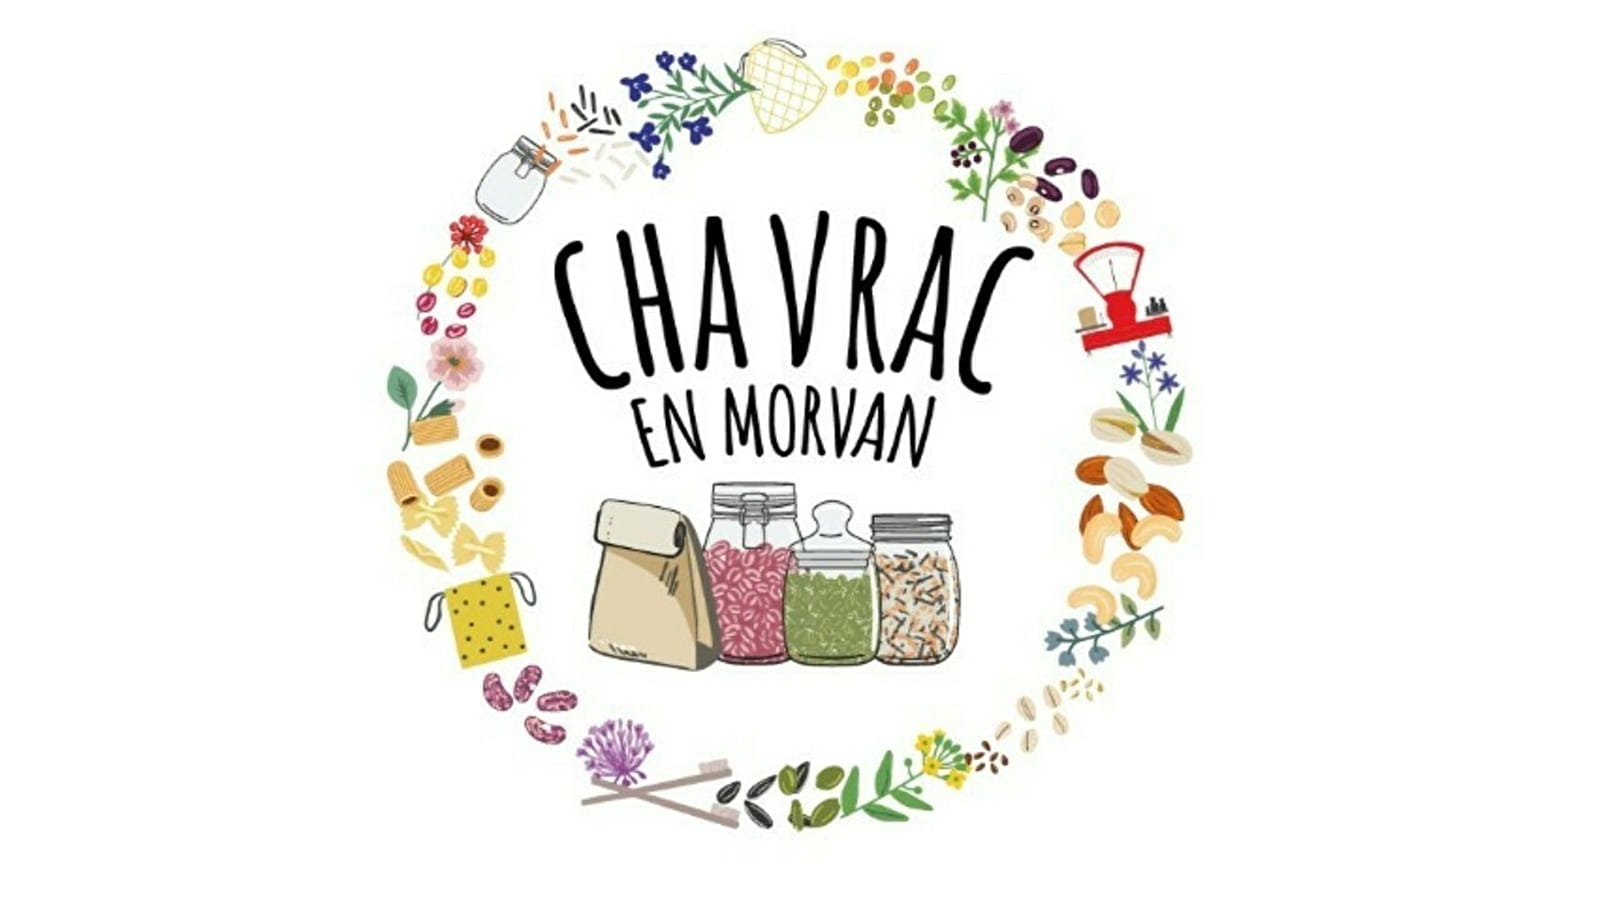 Chavrac en Morvan